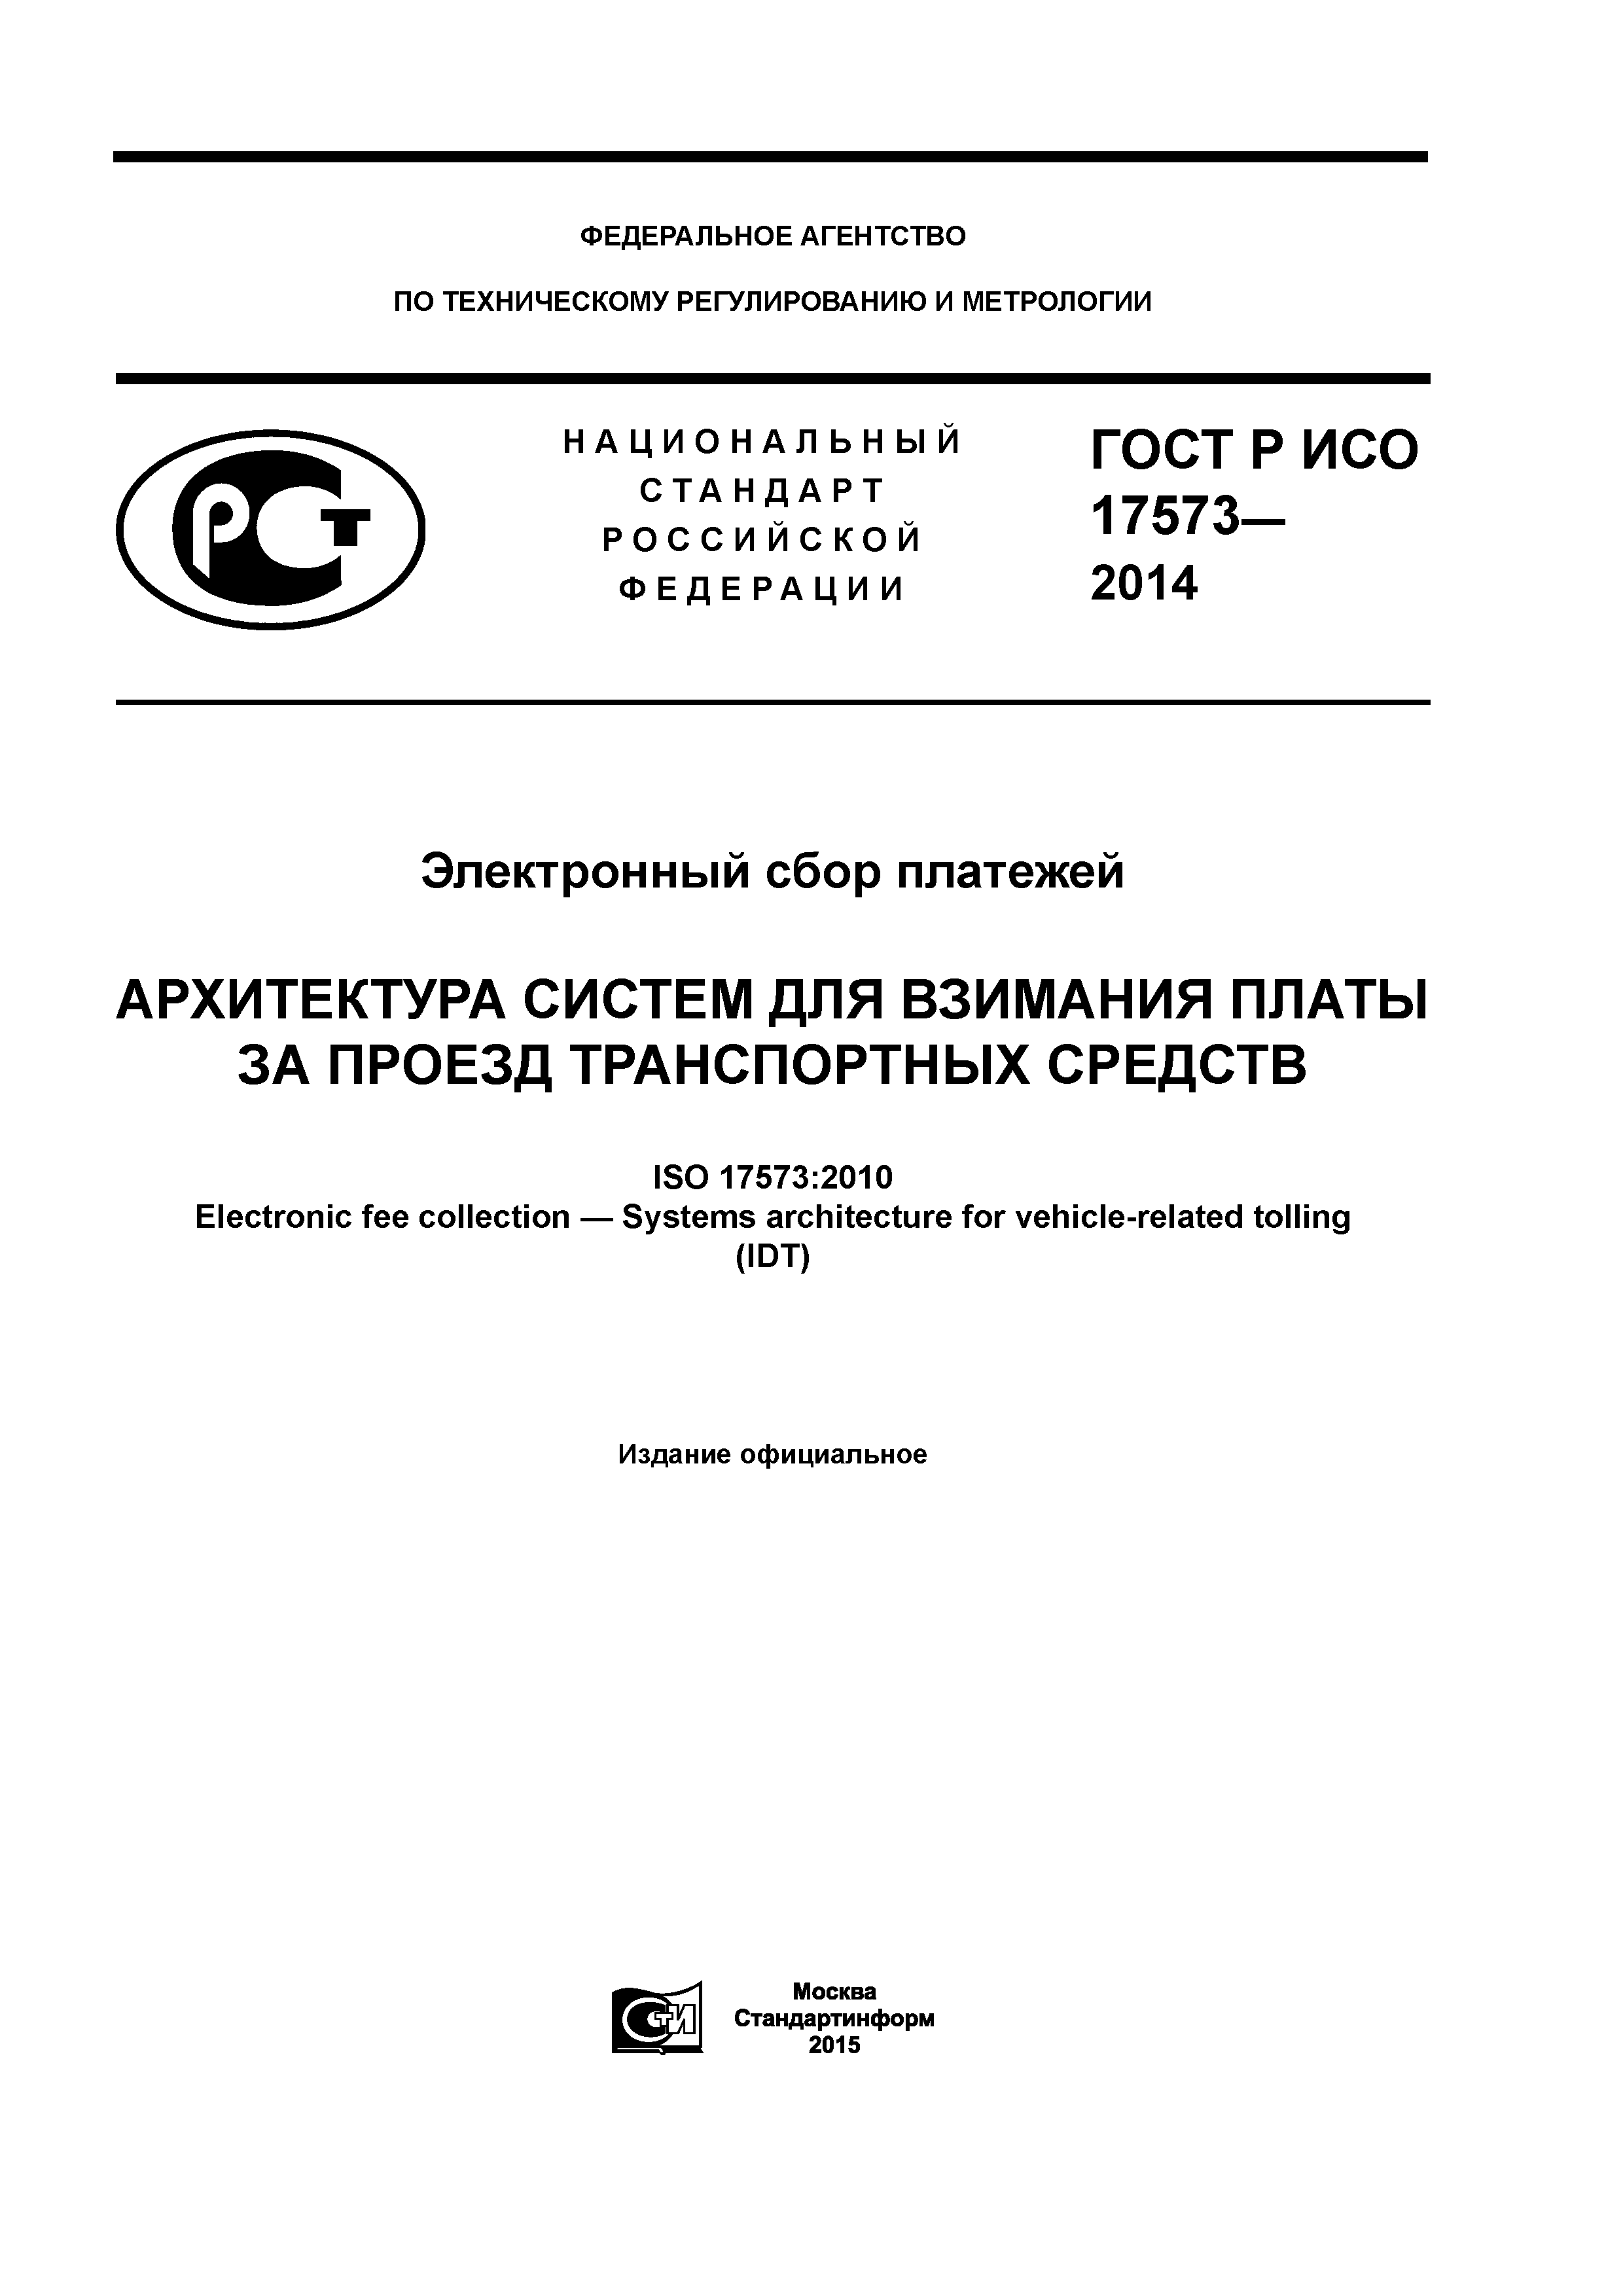 ГОСТ Р ИСО 17573-2014